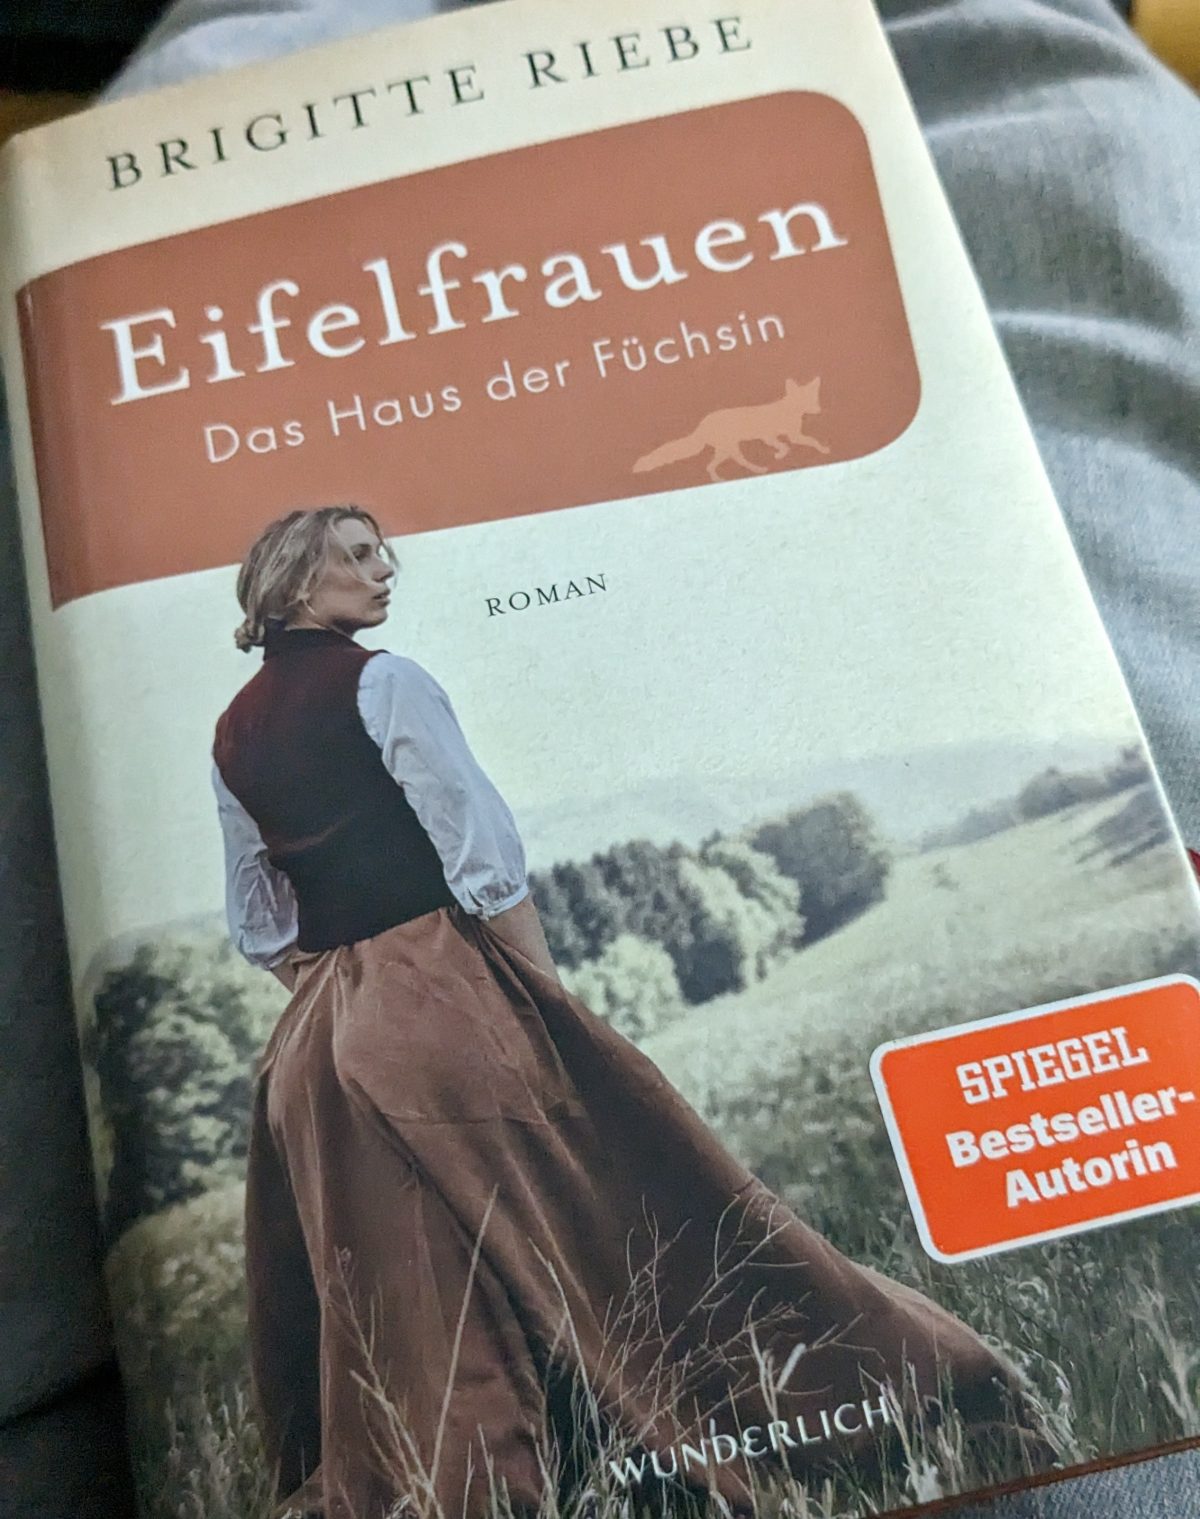 Roman „Eifelfrauen - Das Haus der Füchsin“